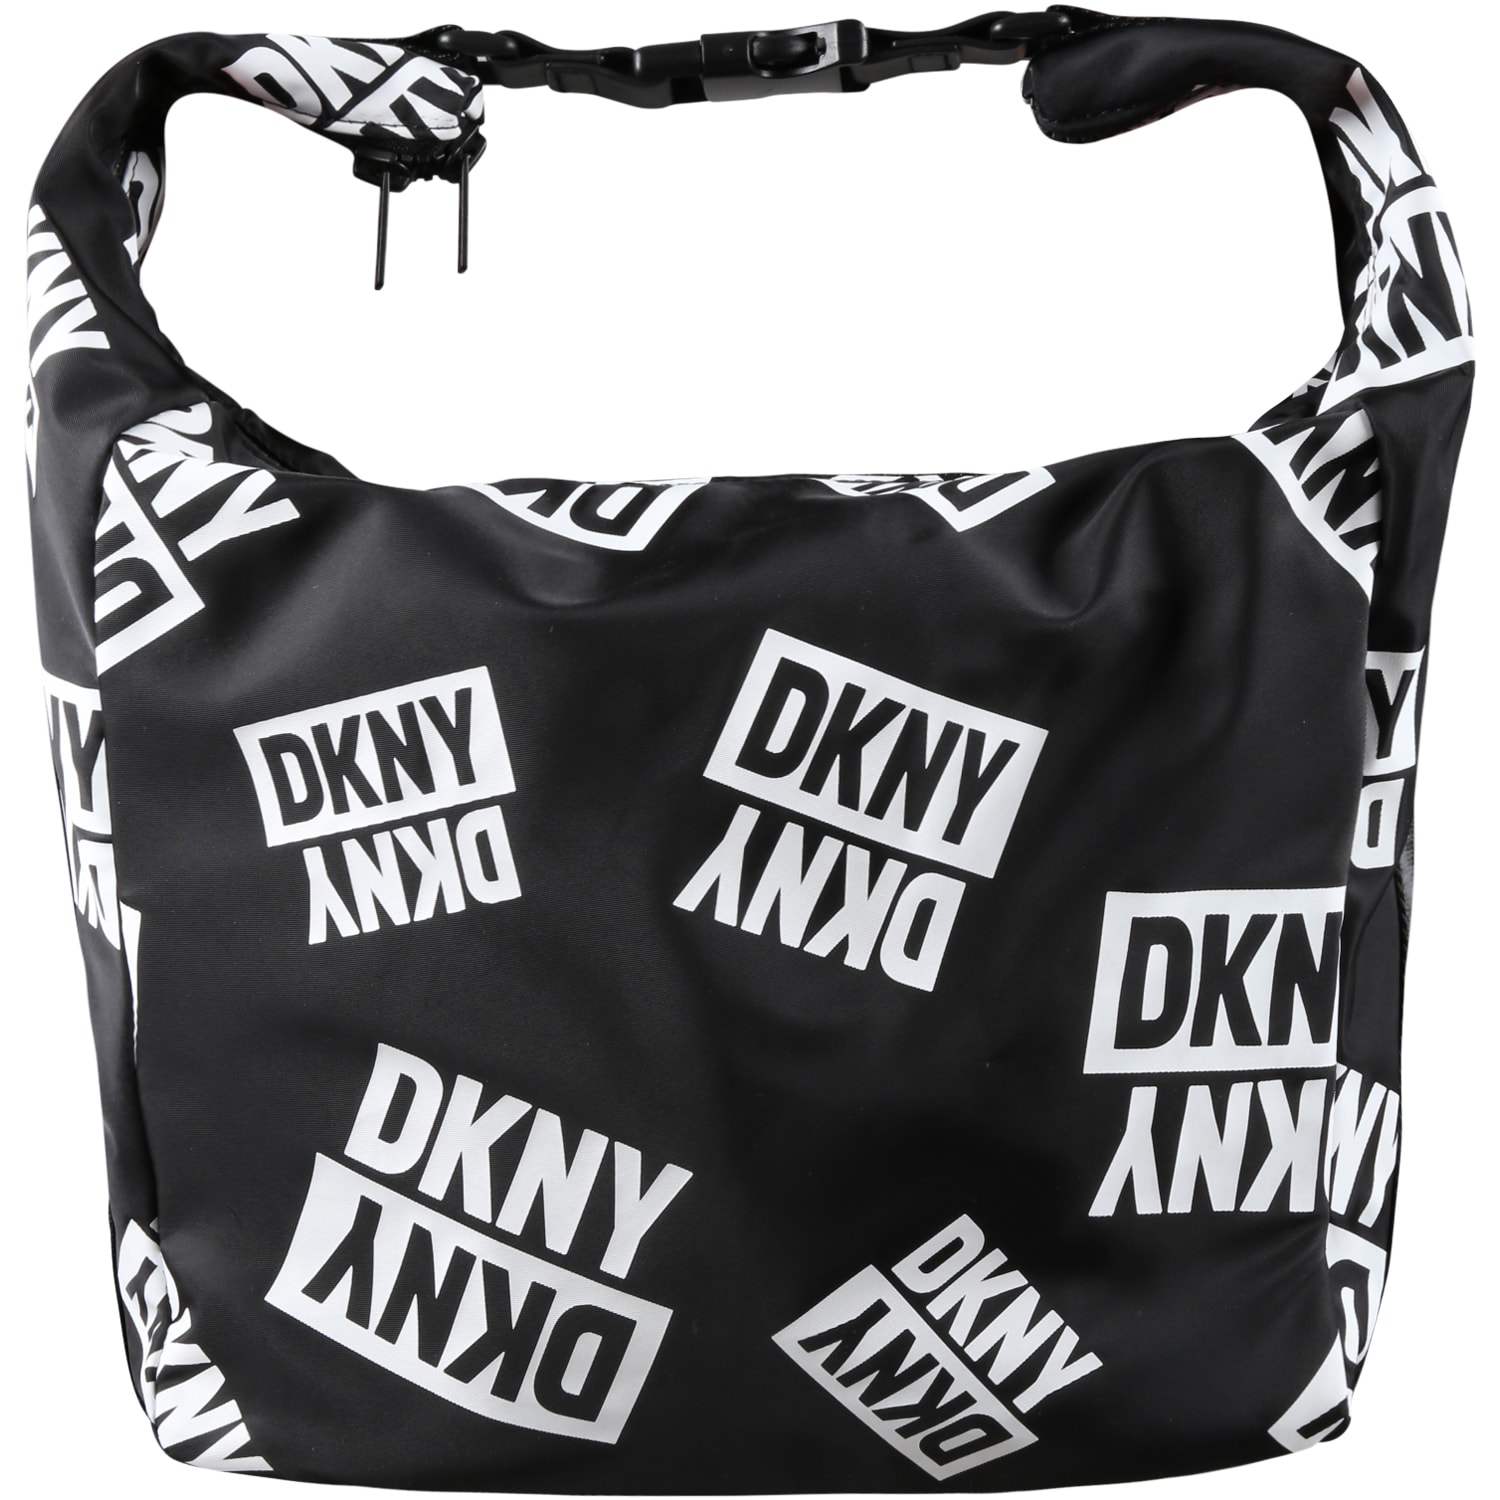 DKNY Black Bag For Girl With White Logo